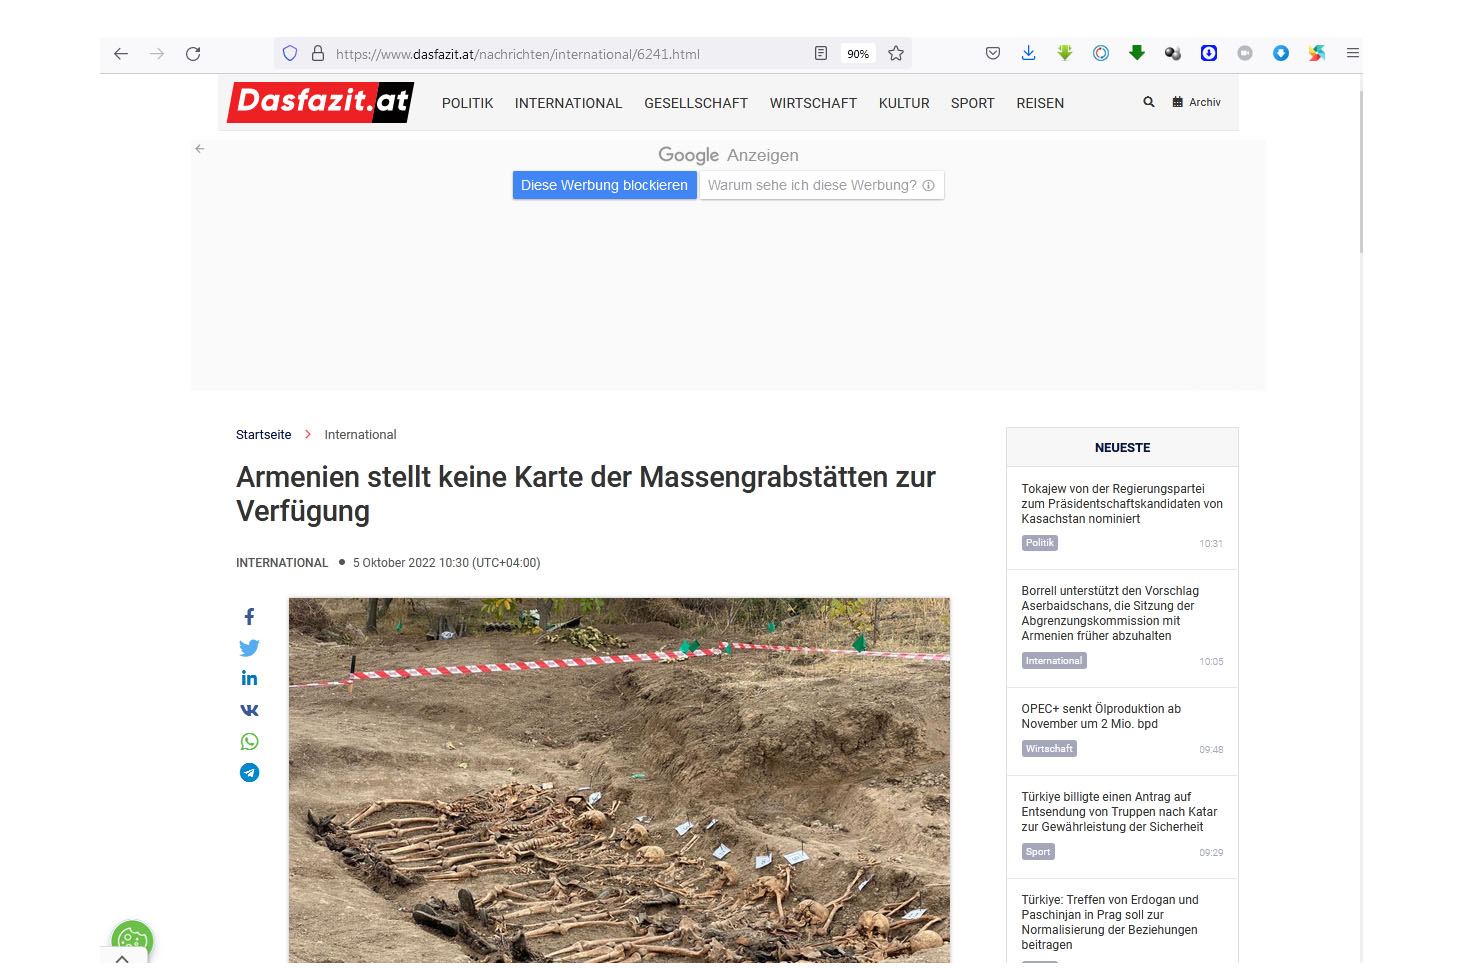 В австрийской прессе опубликована статья об очередном преступлении армян - массовом захоронении в Ходжавенде